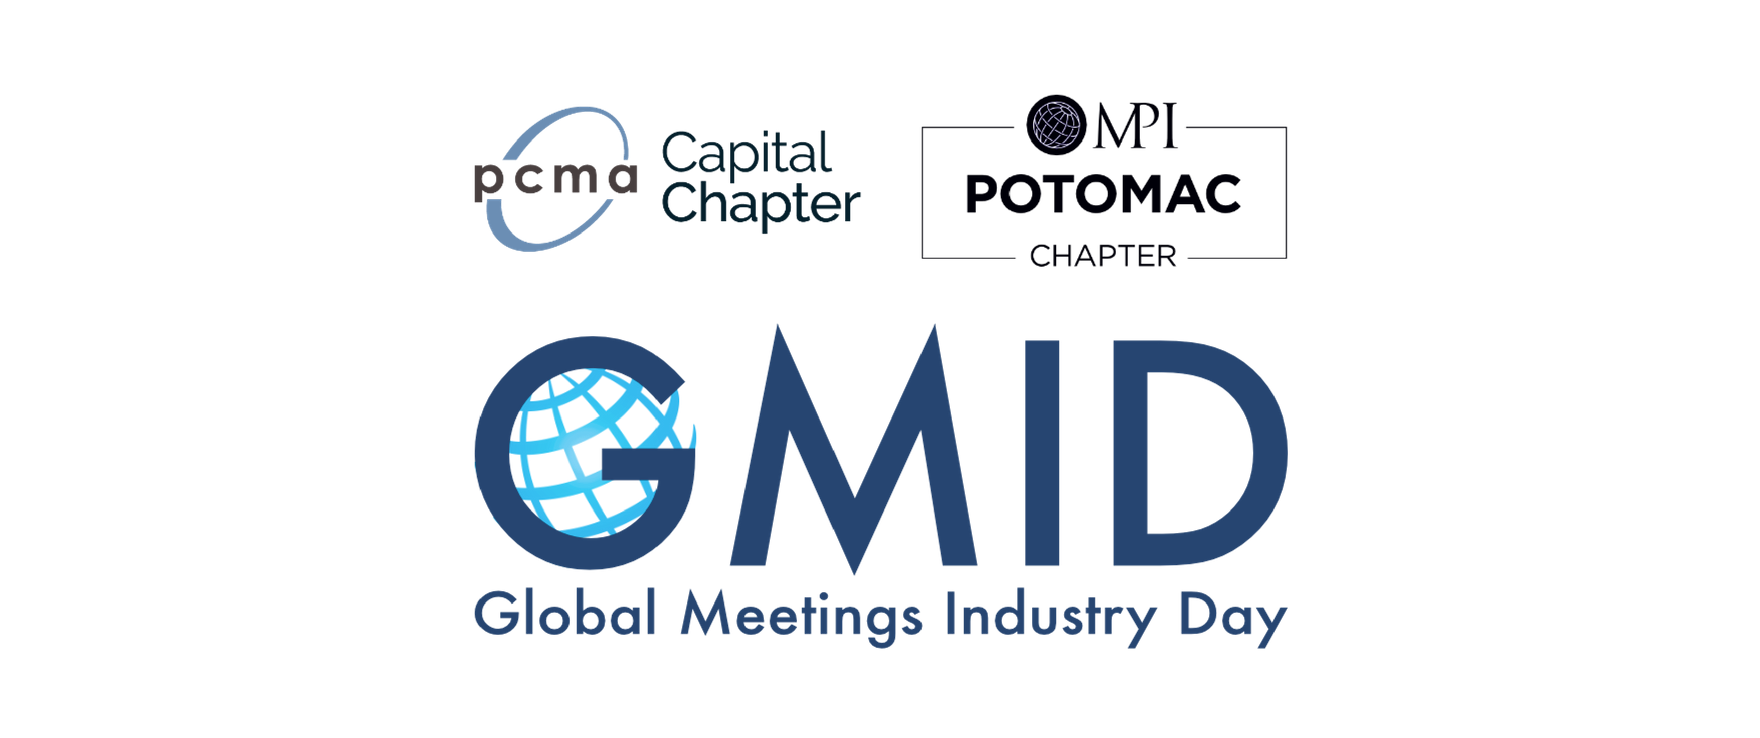 2020 Global Meetings Industry Day 